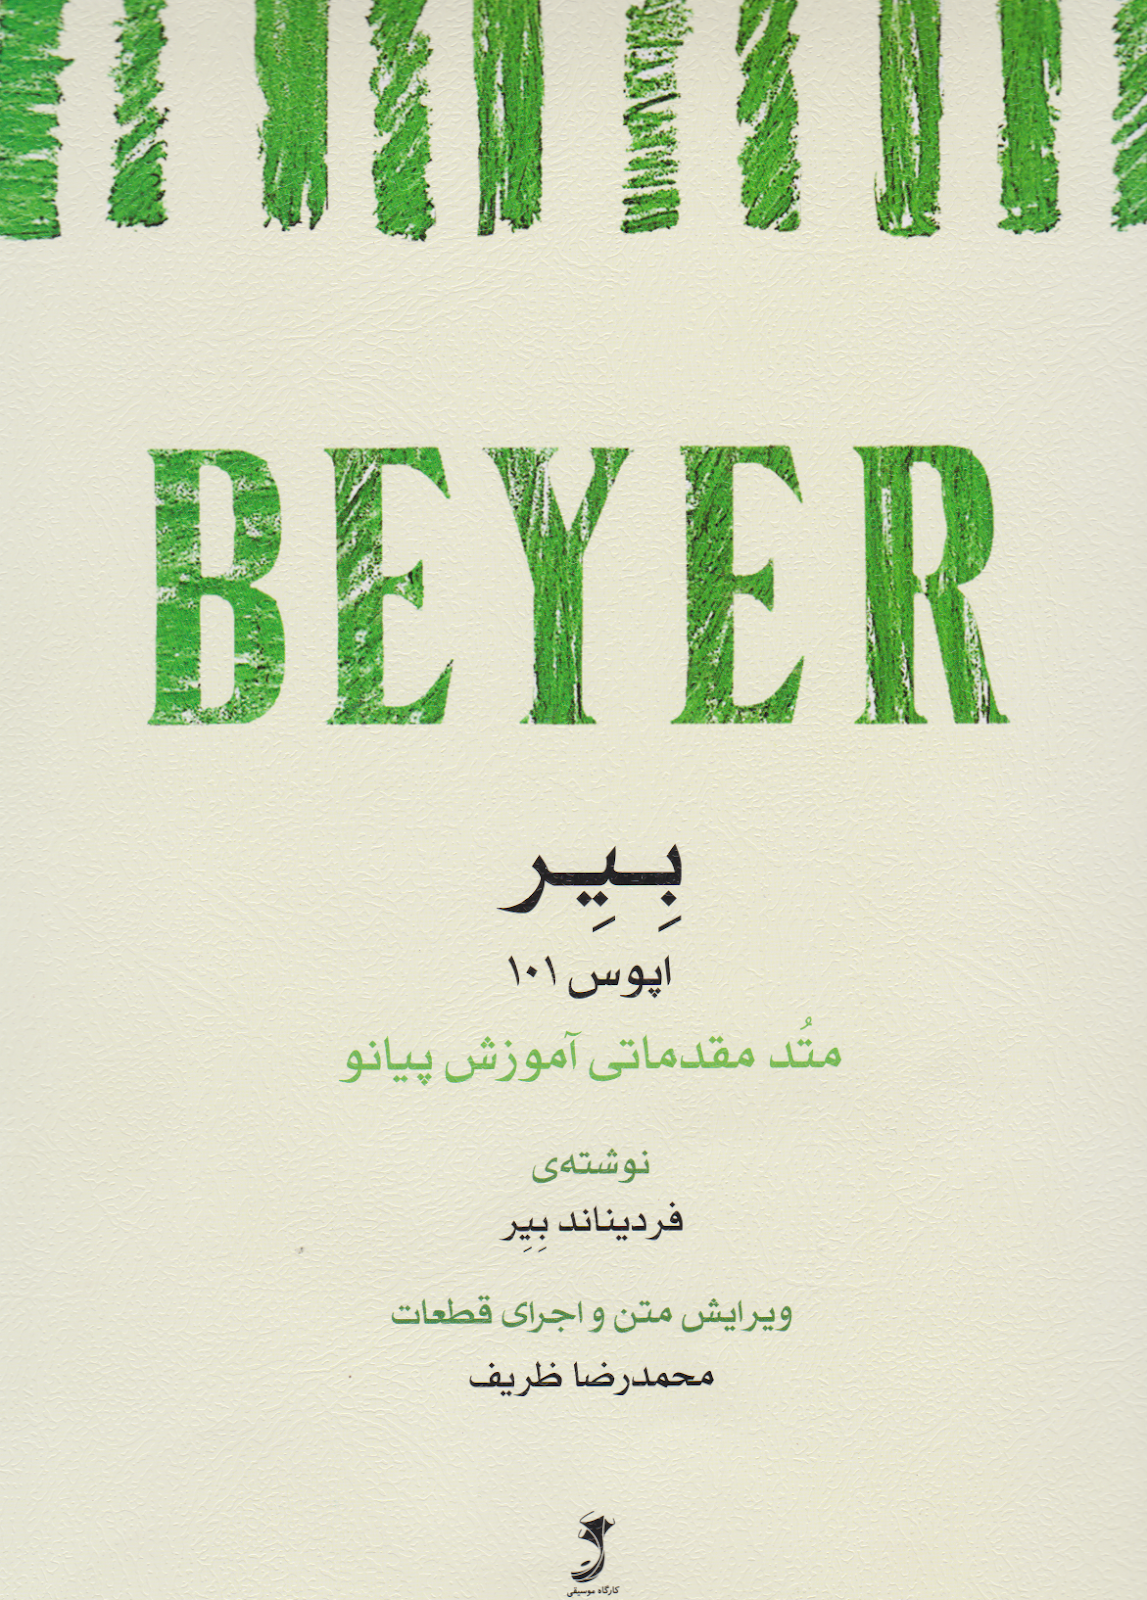 کتاب مقدماتی آموزش پیانو بیر ( BEYER ) اپوس 101 انتشارات کارگاه موسیقی